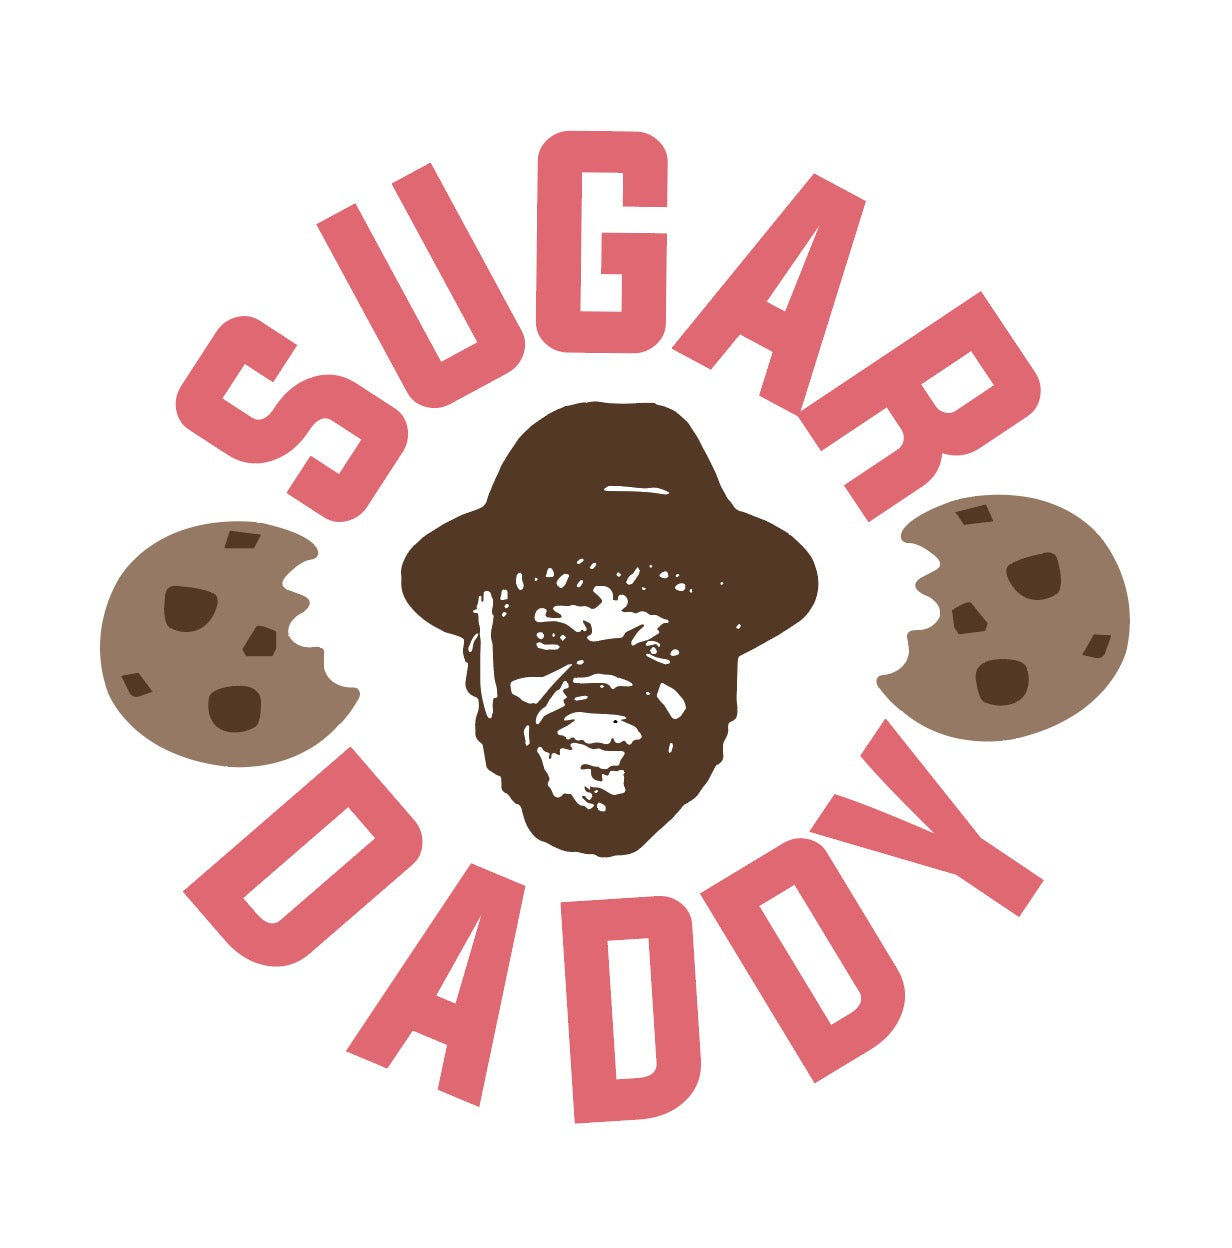 sugar daddy candy logo